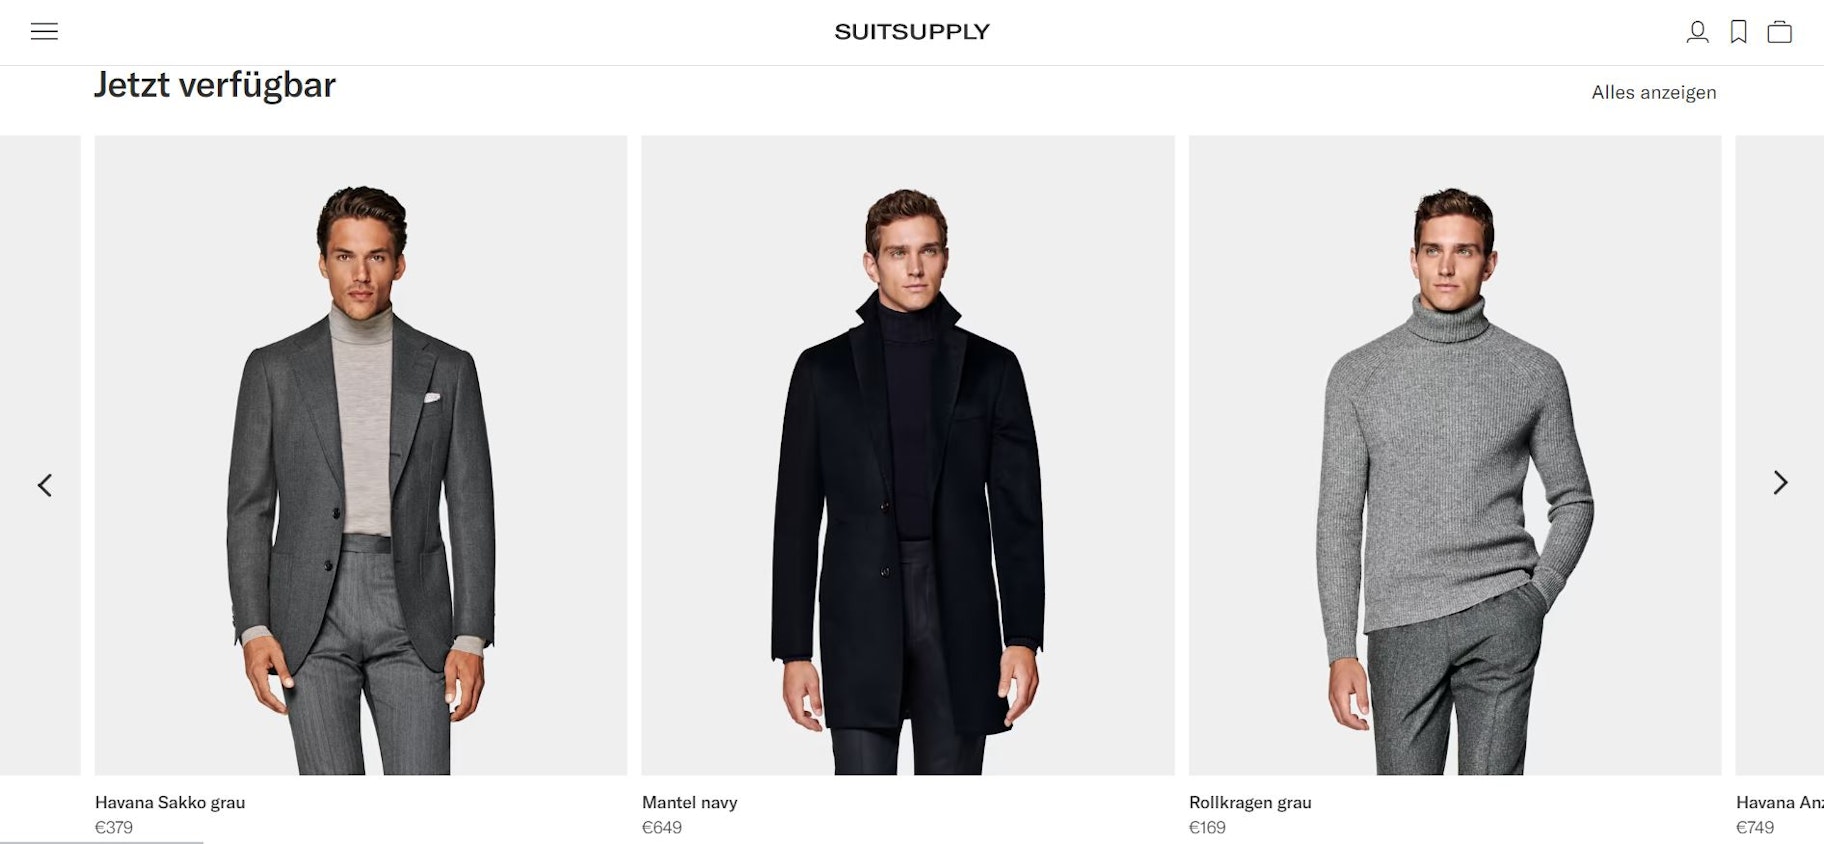 Screenshot von Suit Supply als Beispiel für einen guten Firmennamen